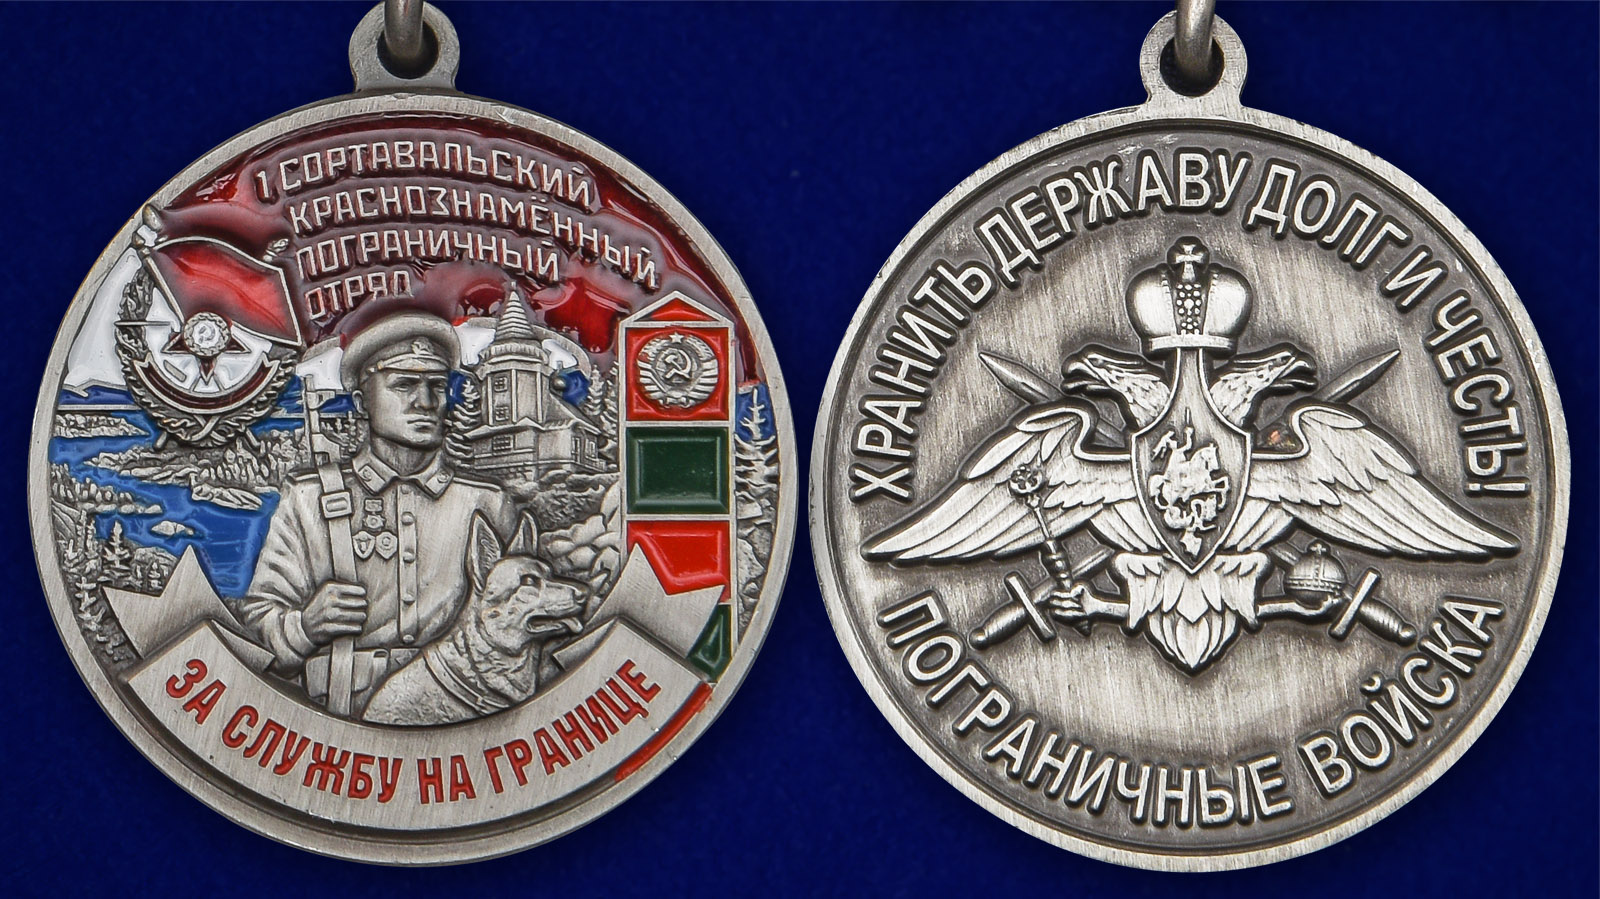 Описание медали "За службу на границе" (1 Сортавальский ПогО) - аверс и реверс